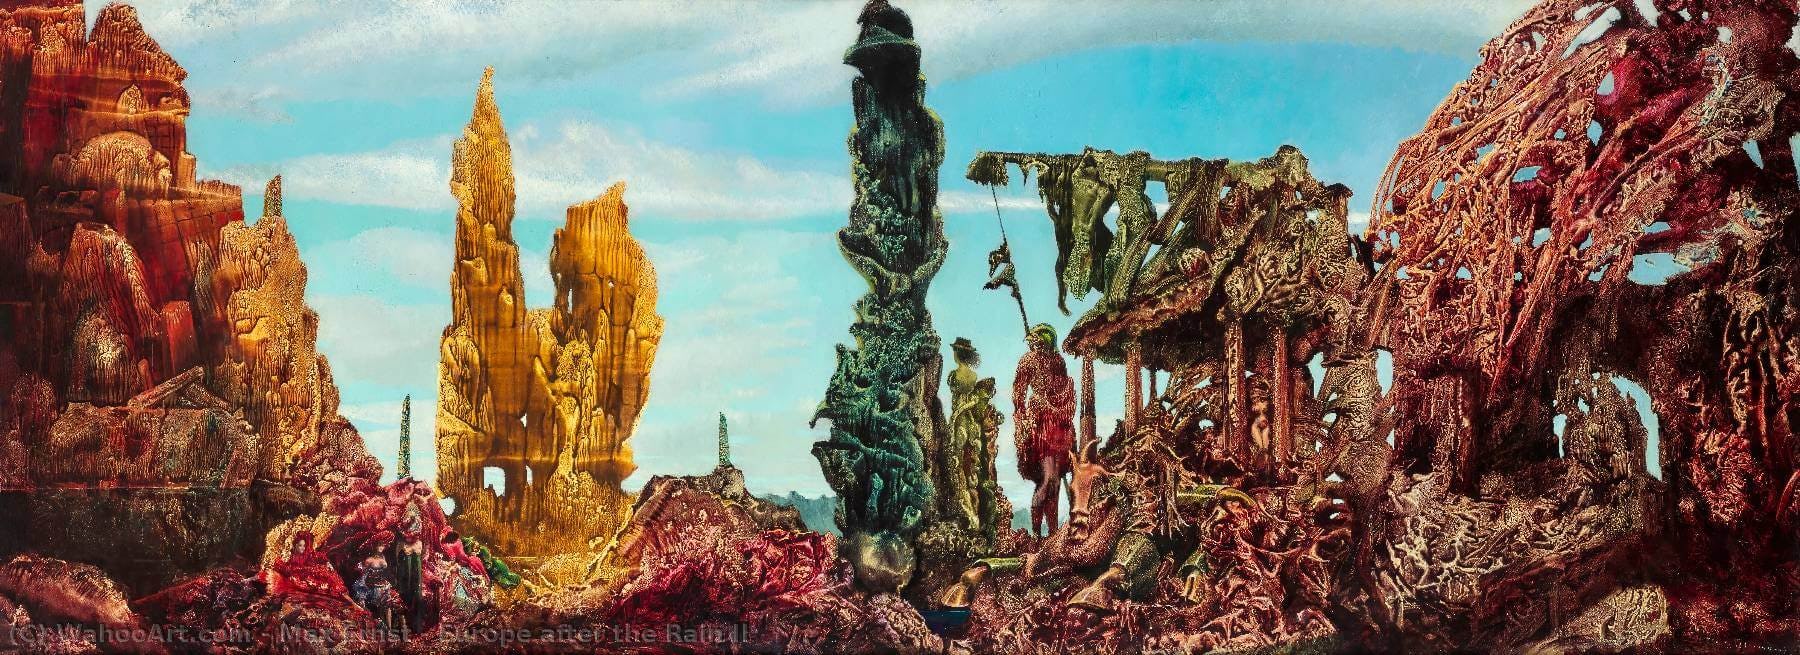 Pintura surrealista de Max Ernst